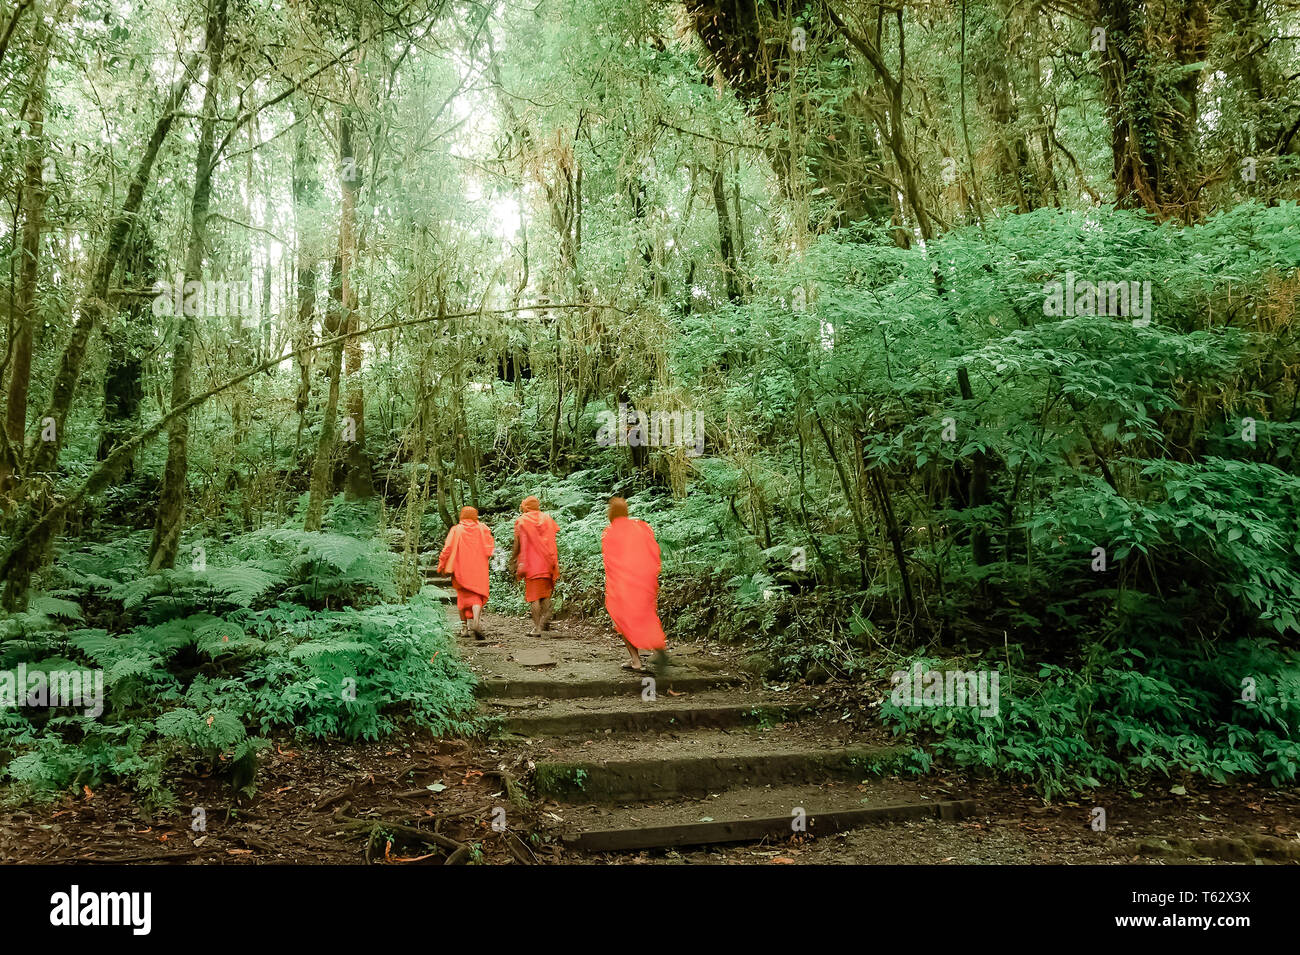 Les moines bouddhistes dans la forêt tropicale brumeuse. Tropical sauvage plante poussant dans des jungles moussus. Beauté surréaliste d'arbres exotiques. Contexte Lors de voyages Banque D'Images